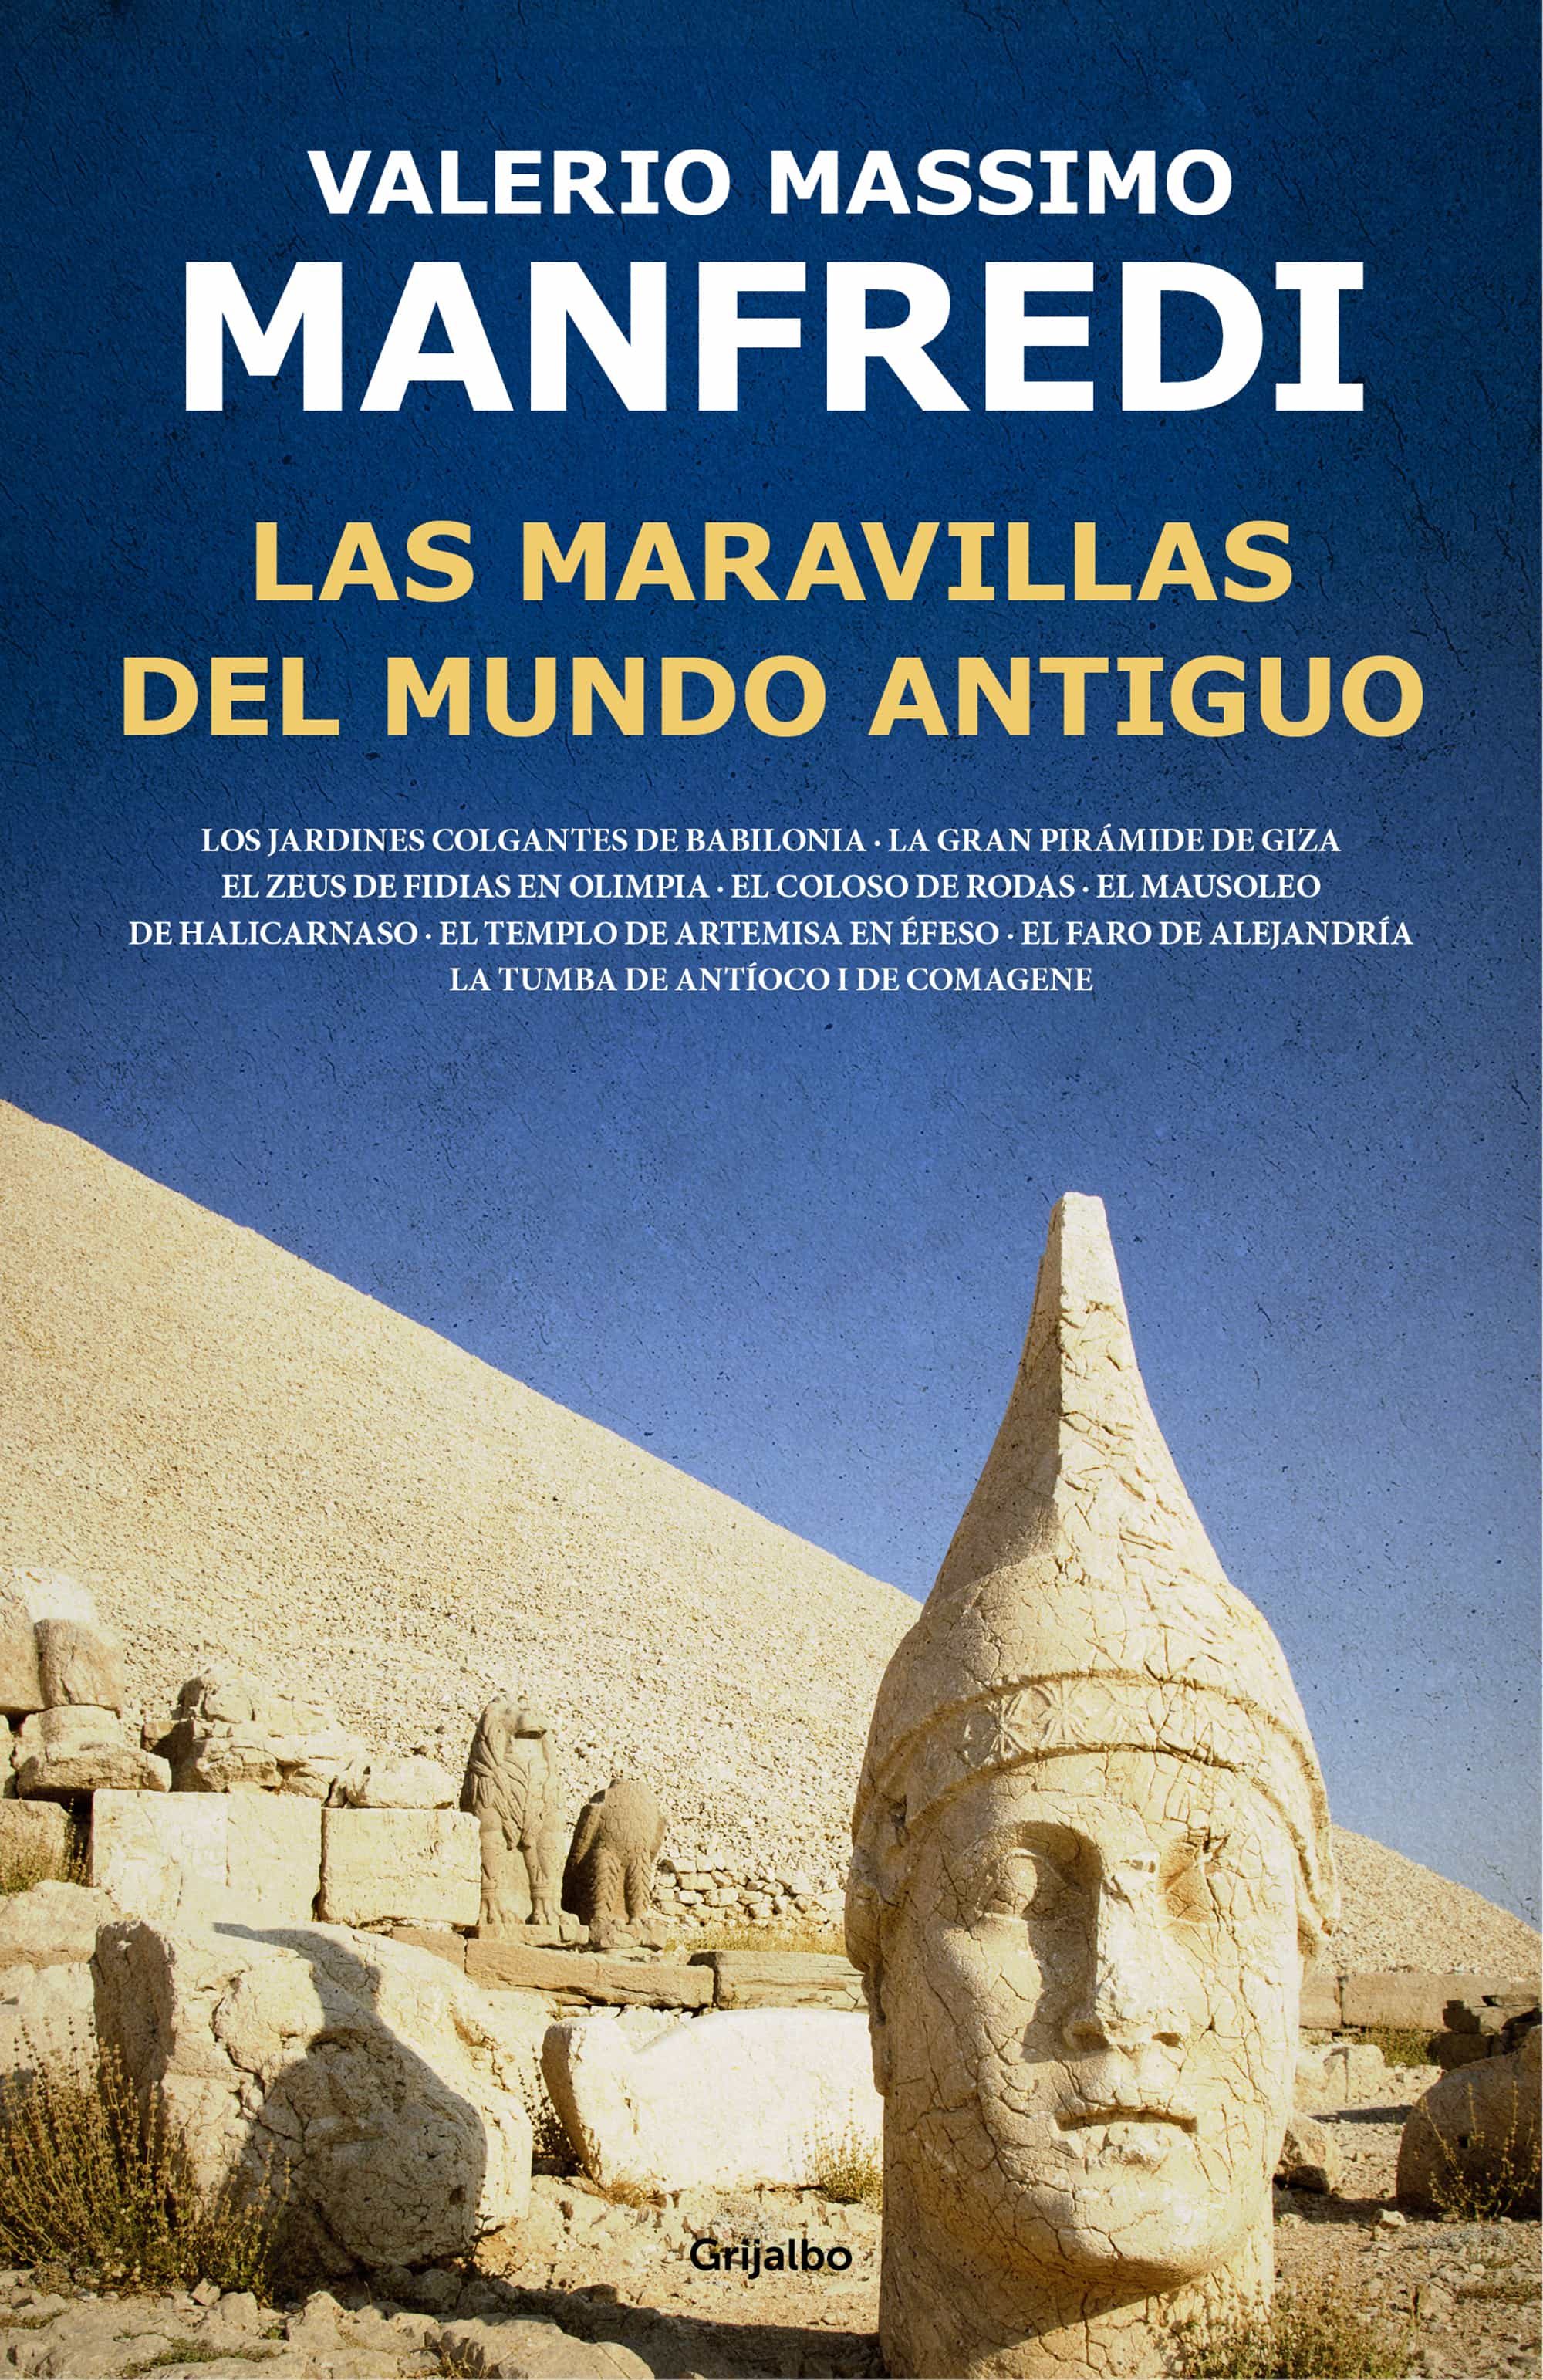 Descargar libro arqueologia prohibida pdf viewer